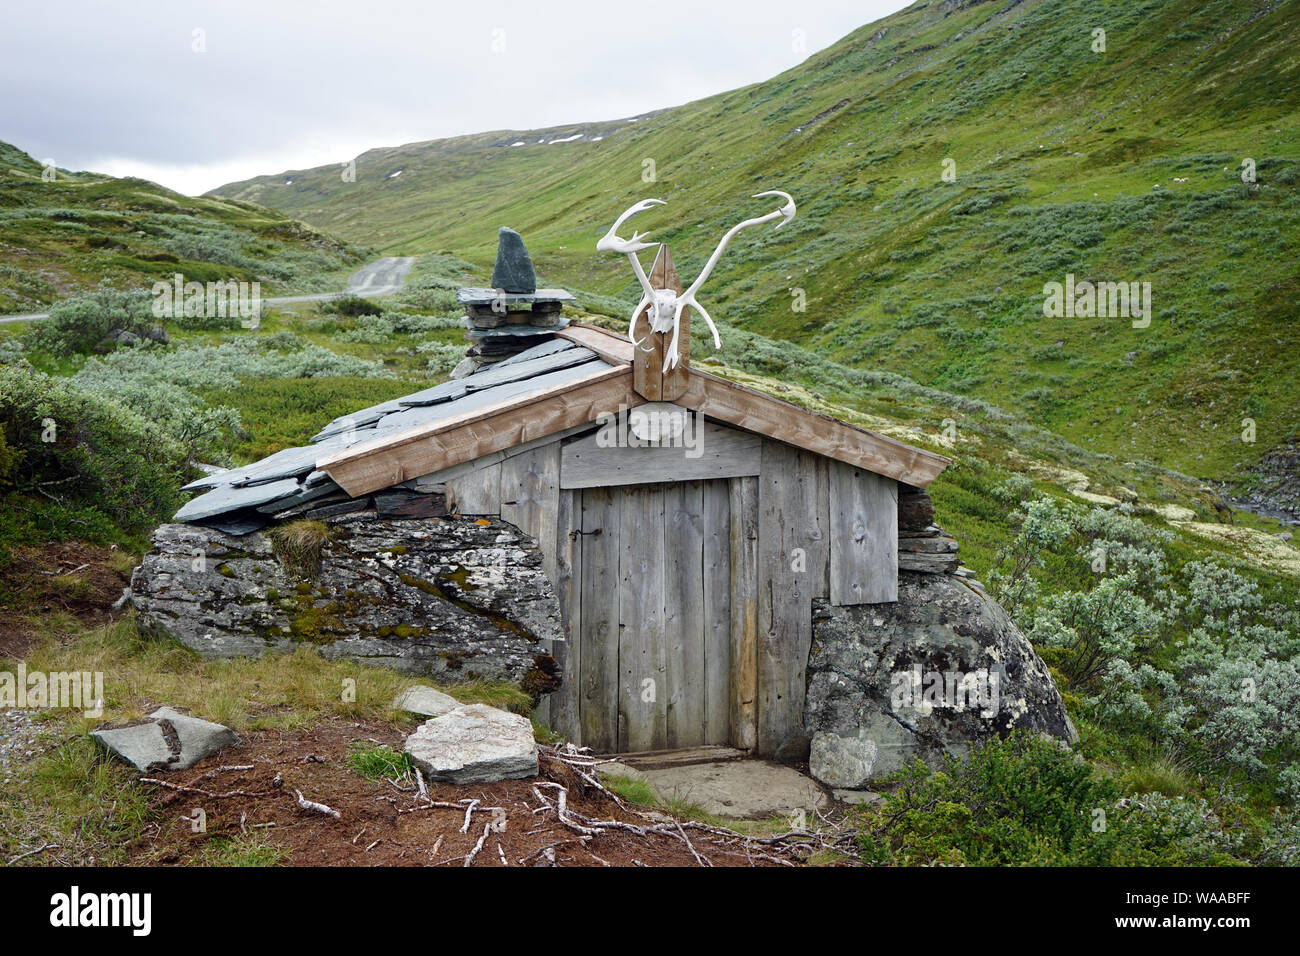 Petite maison en bois et chemin de terre en Norvège Banque D'Images